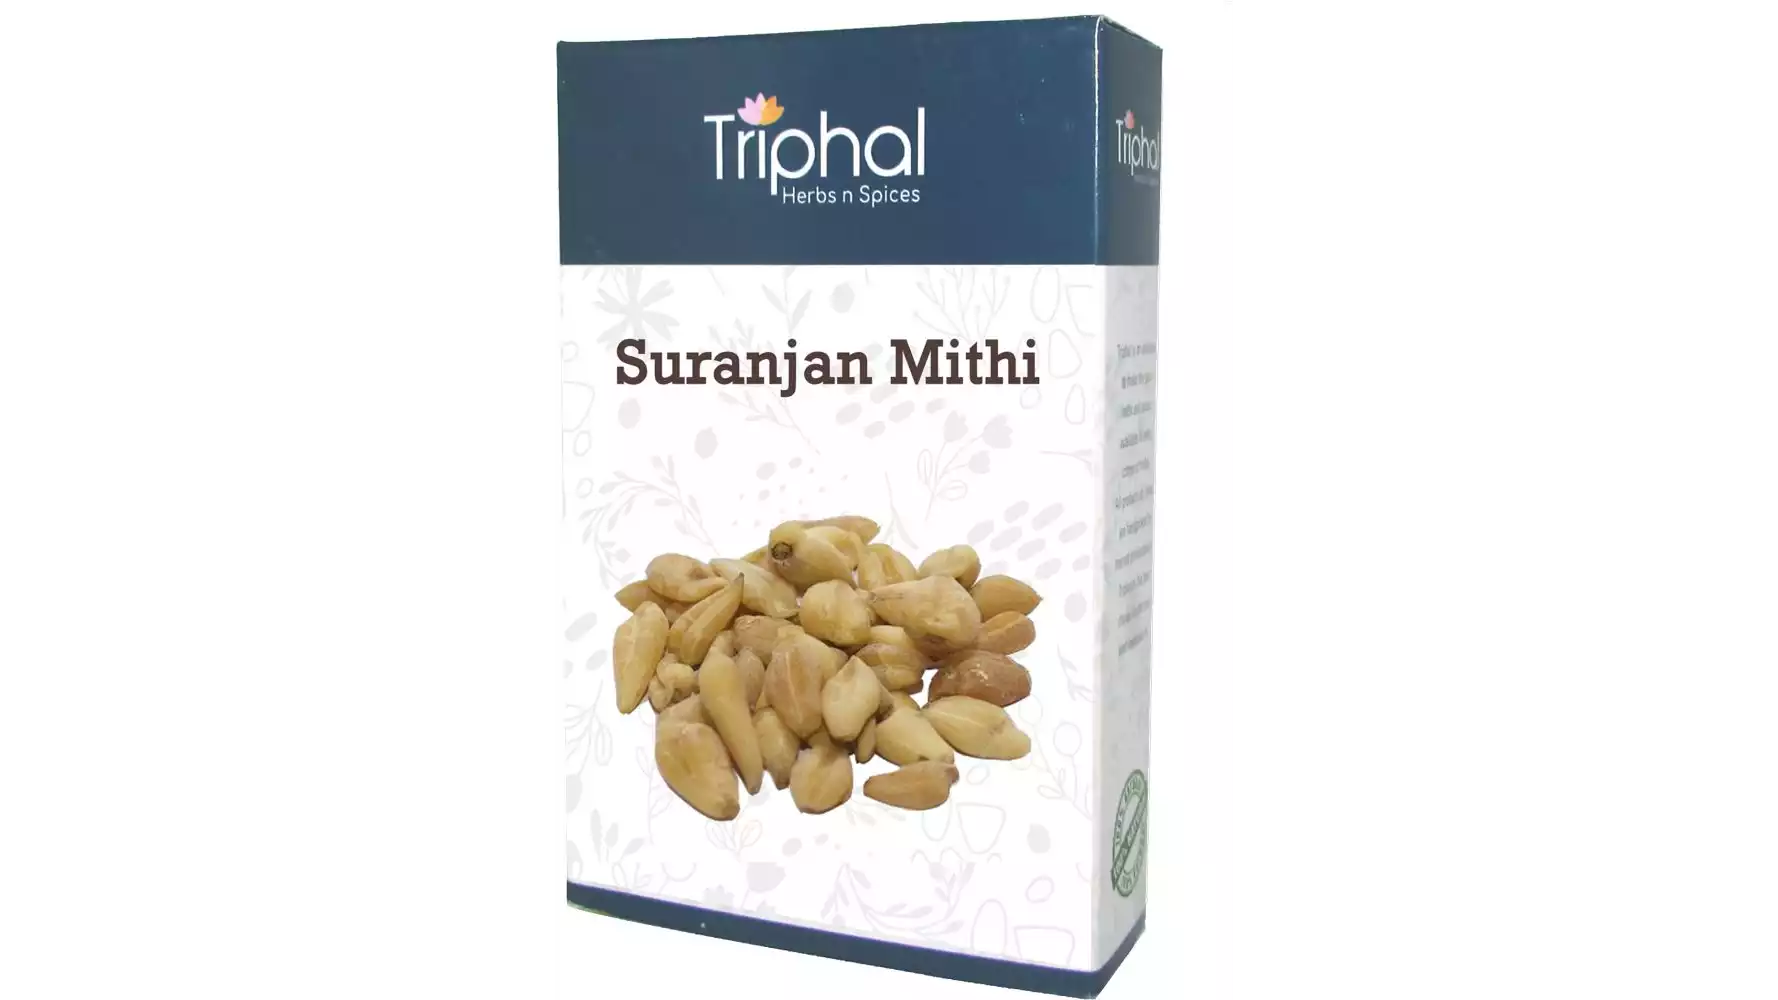 Triphal Raw Suranjan Mithi (400g)